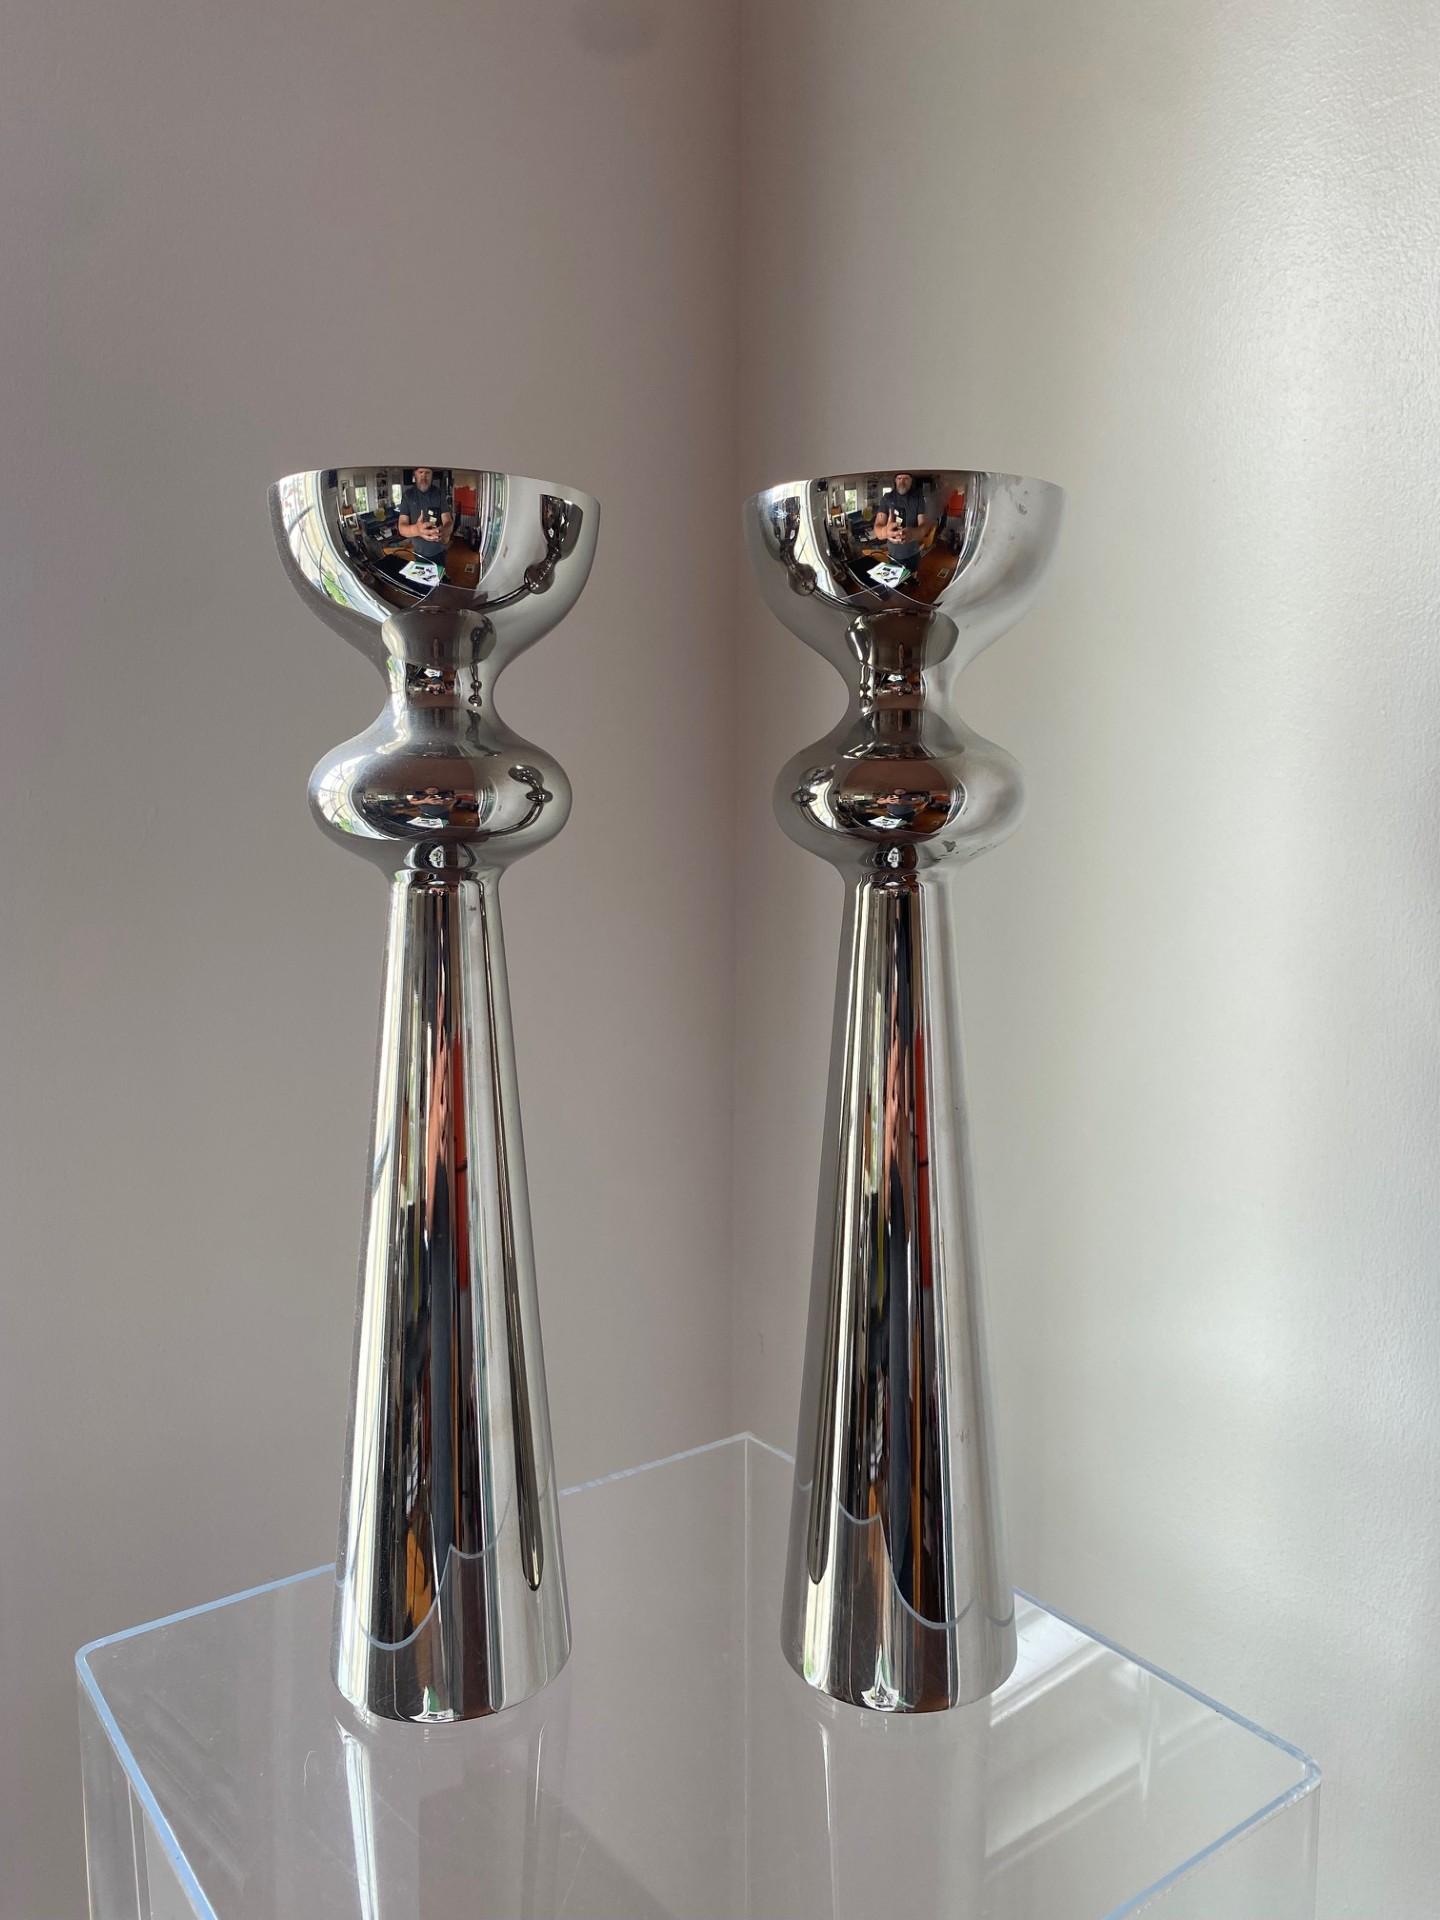 Paire de vases incroyablement sculpturaux en acier inoxydable poli de Georg Jensen.  Cette paire se distingue par sa beauté.  La hauteur substantielle combinée à la finition chromée irradie d'un éclat minimaliste tout espace qui les accueille. 